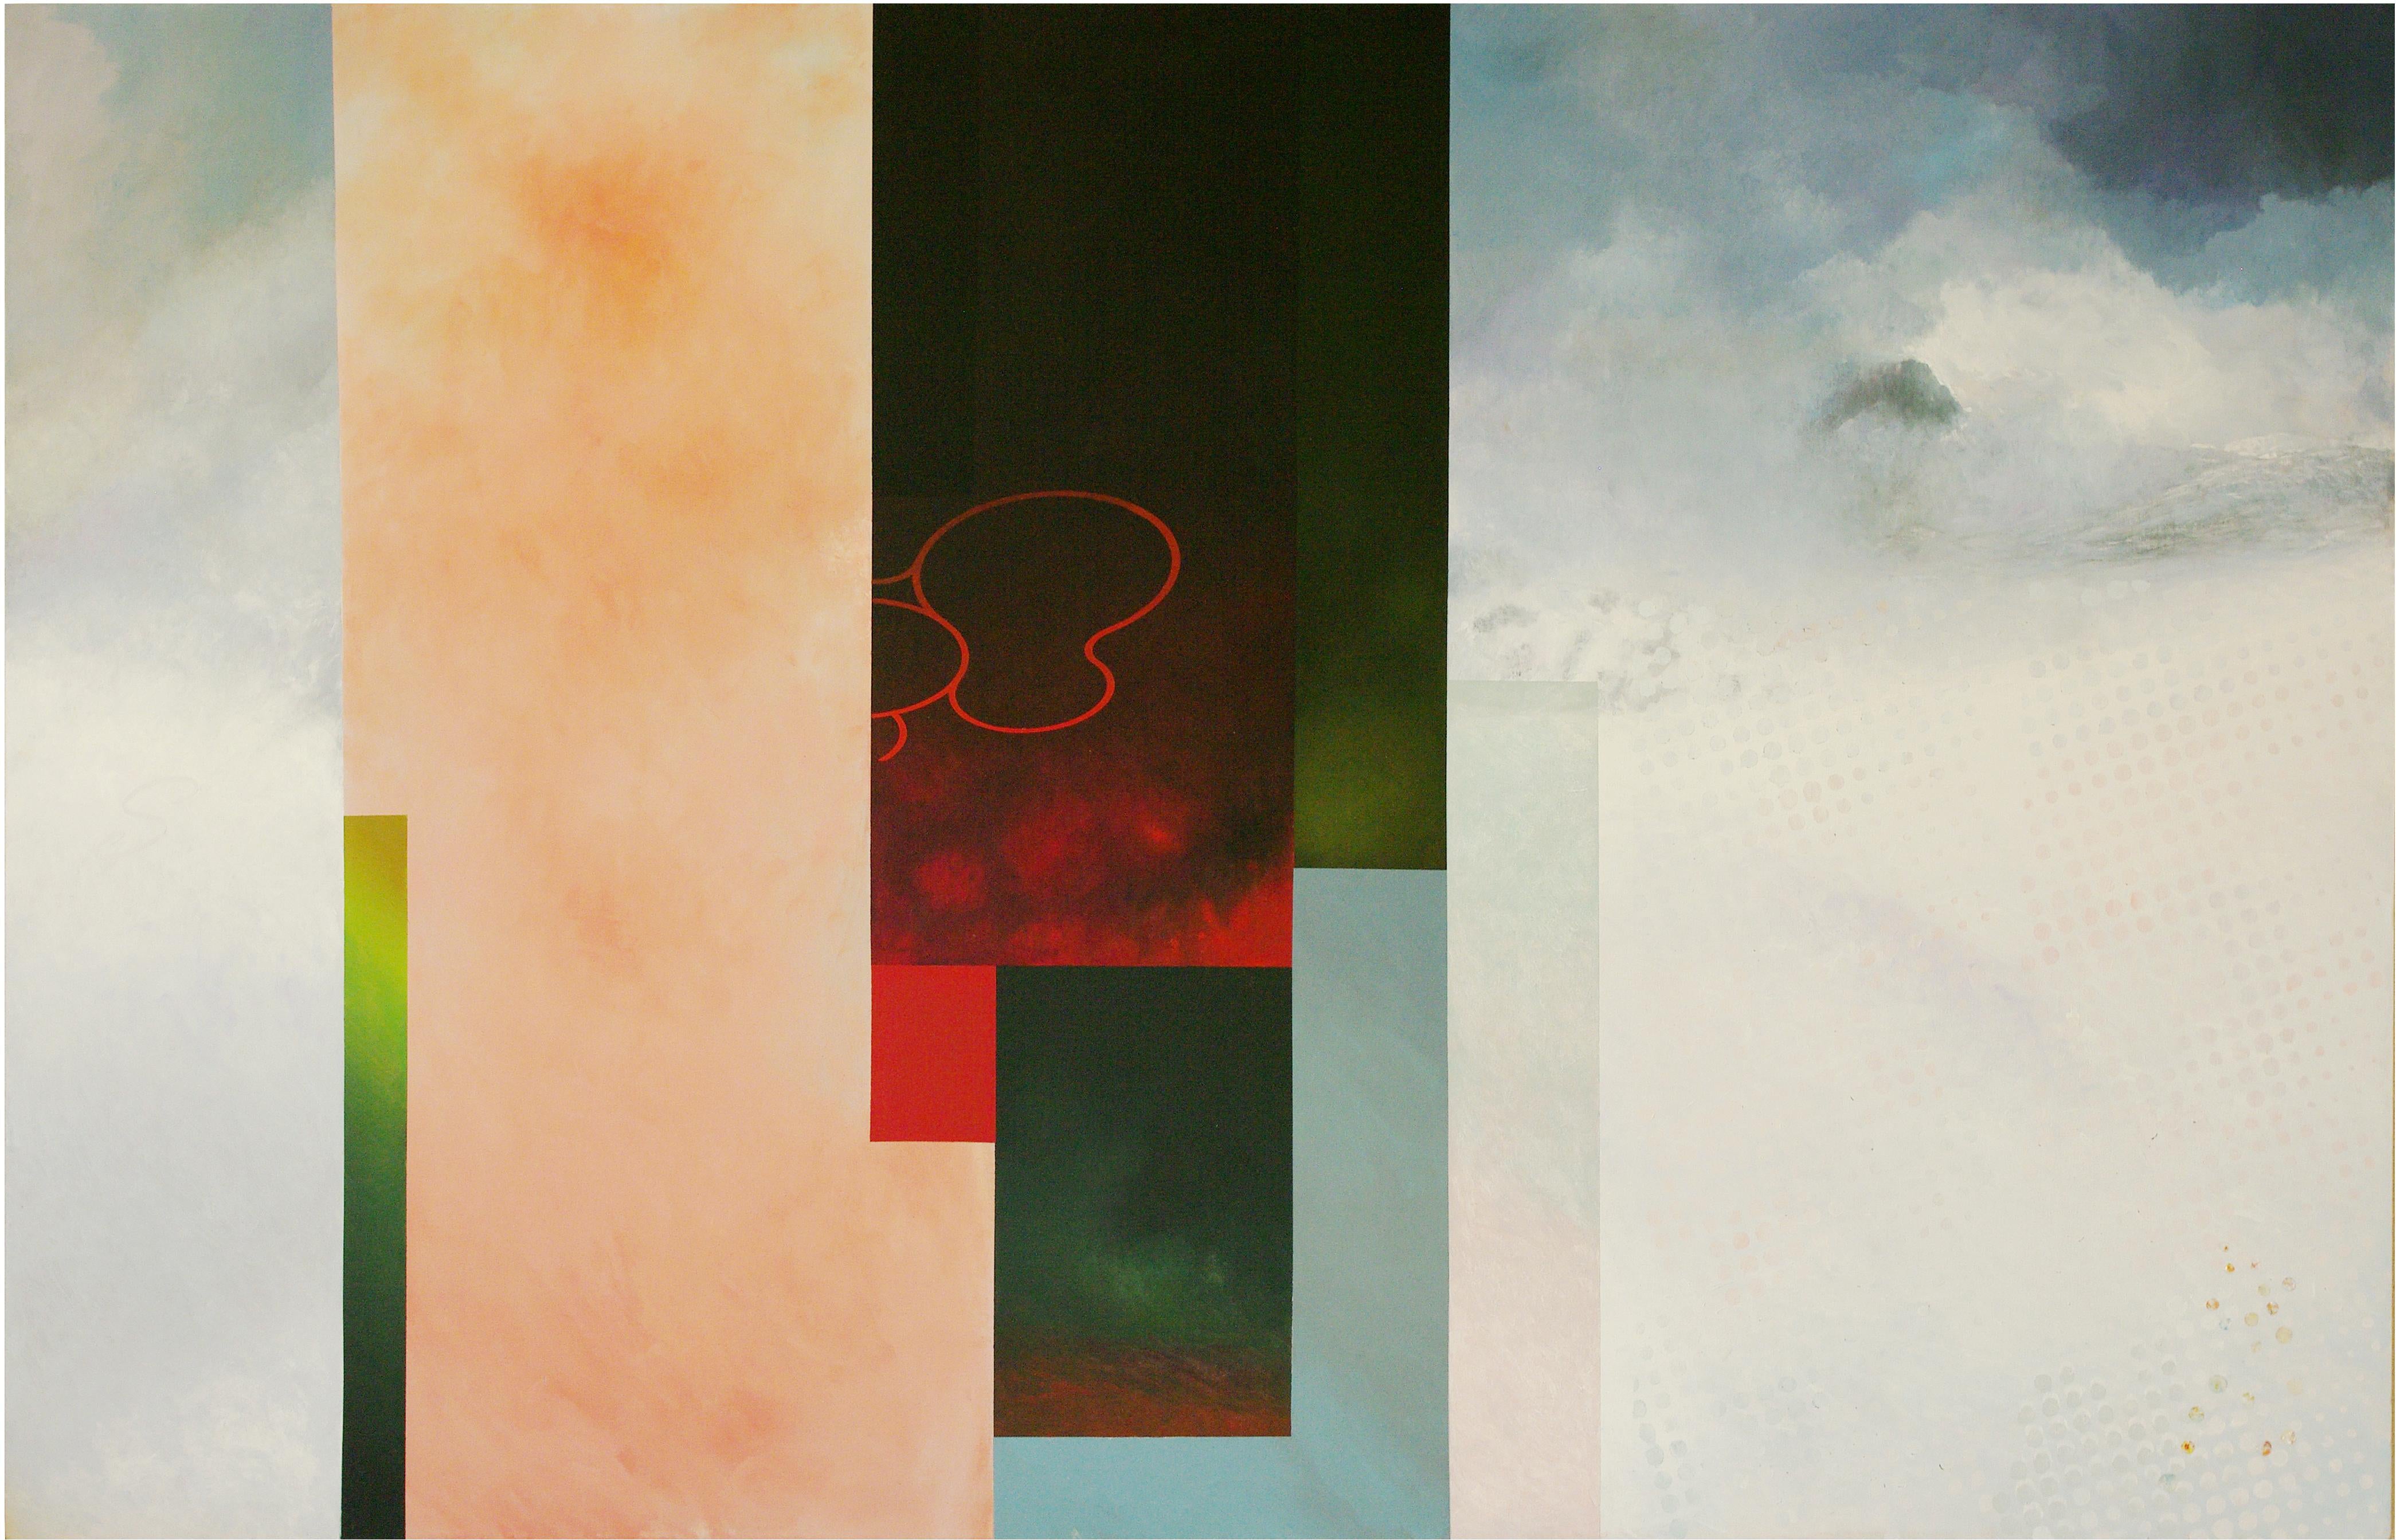 Abstract Painting Francisco Nicolás - Ice - Contemporain, abstrait, minimaliste, moderne, pop art, surréaliste, paysage